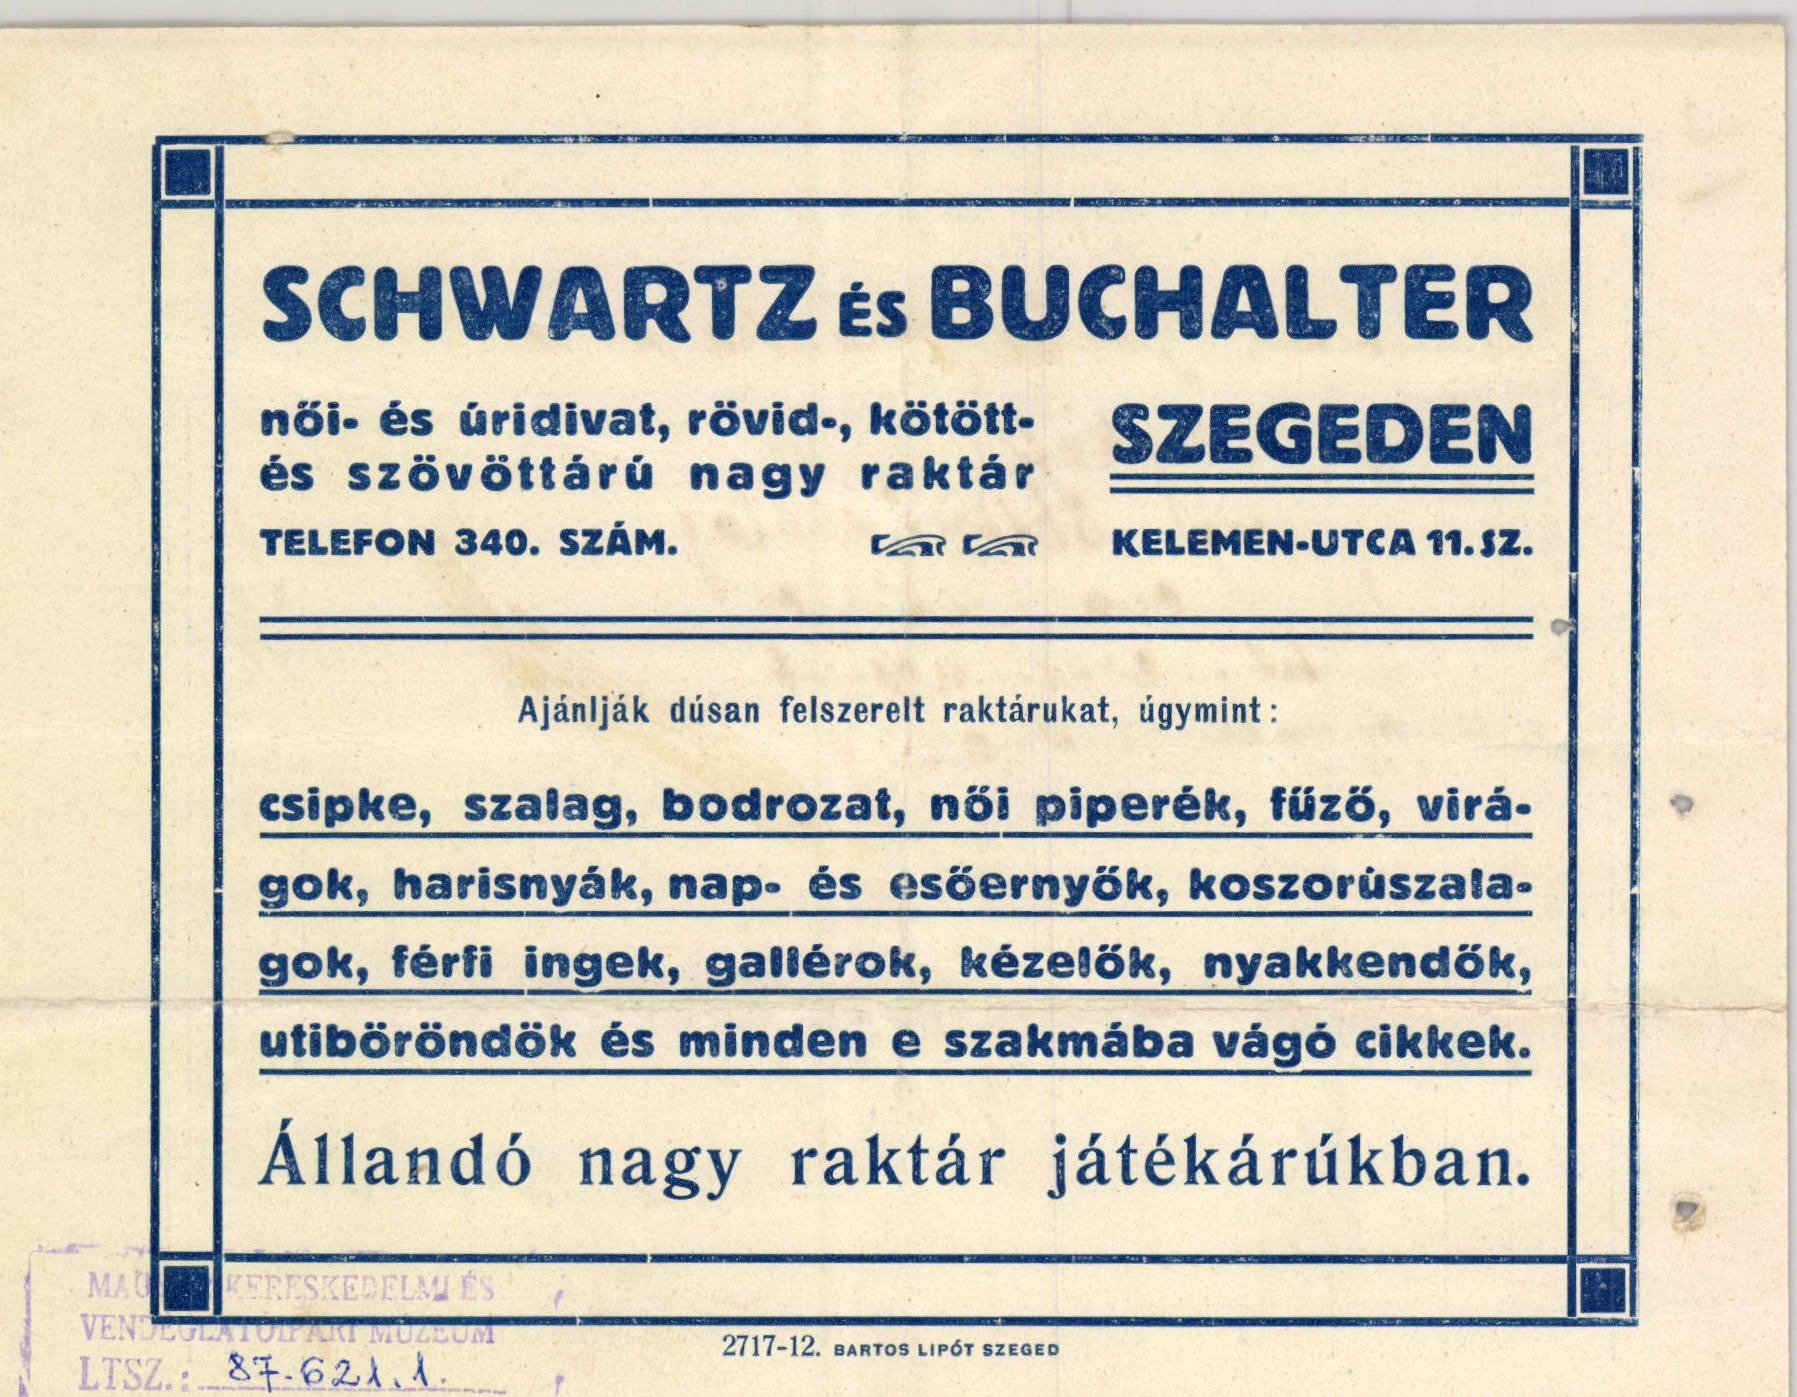 Schwartz és Buchalter női- és úridivat, rövid-, kötött- és szövöttárú nagy raktár (Magyar Kereskedelmi és Vendéglátóipari Múzeum CC BY-NC-SA)